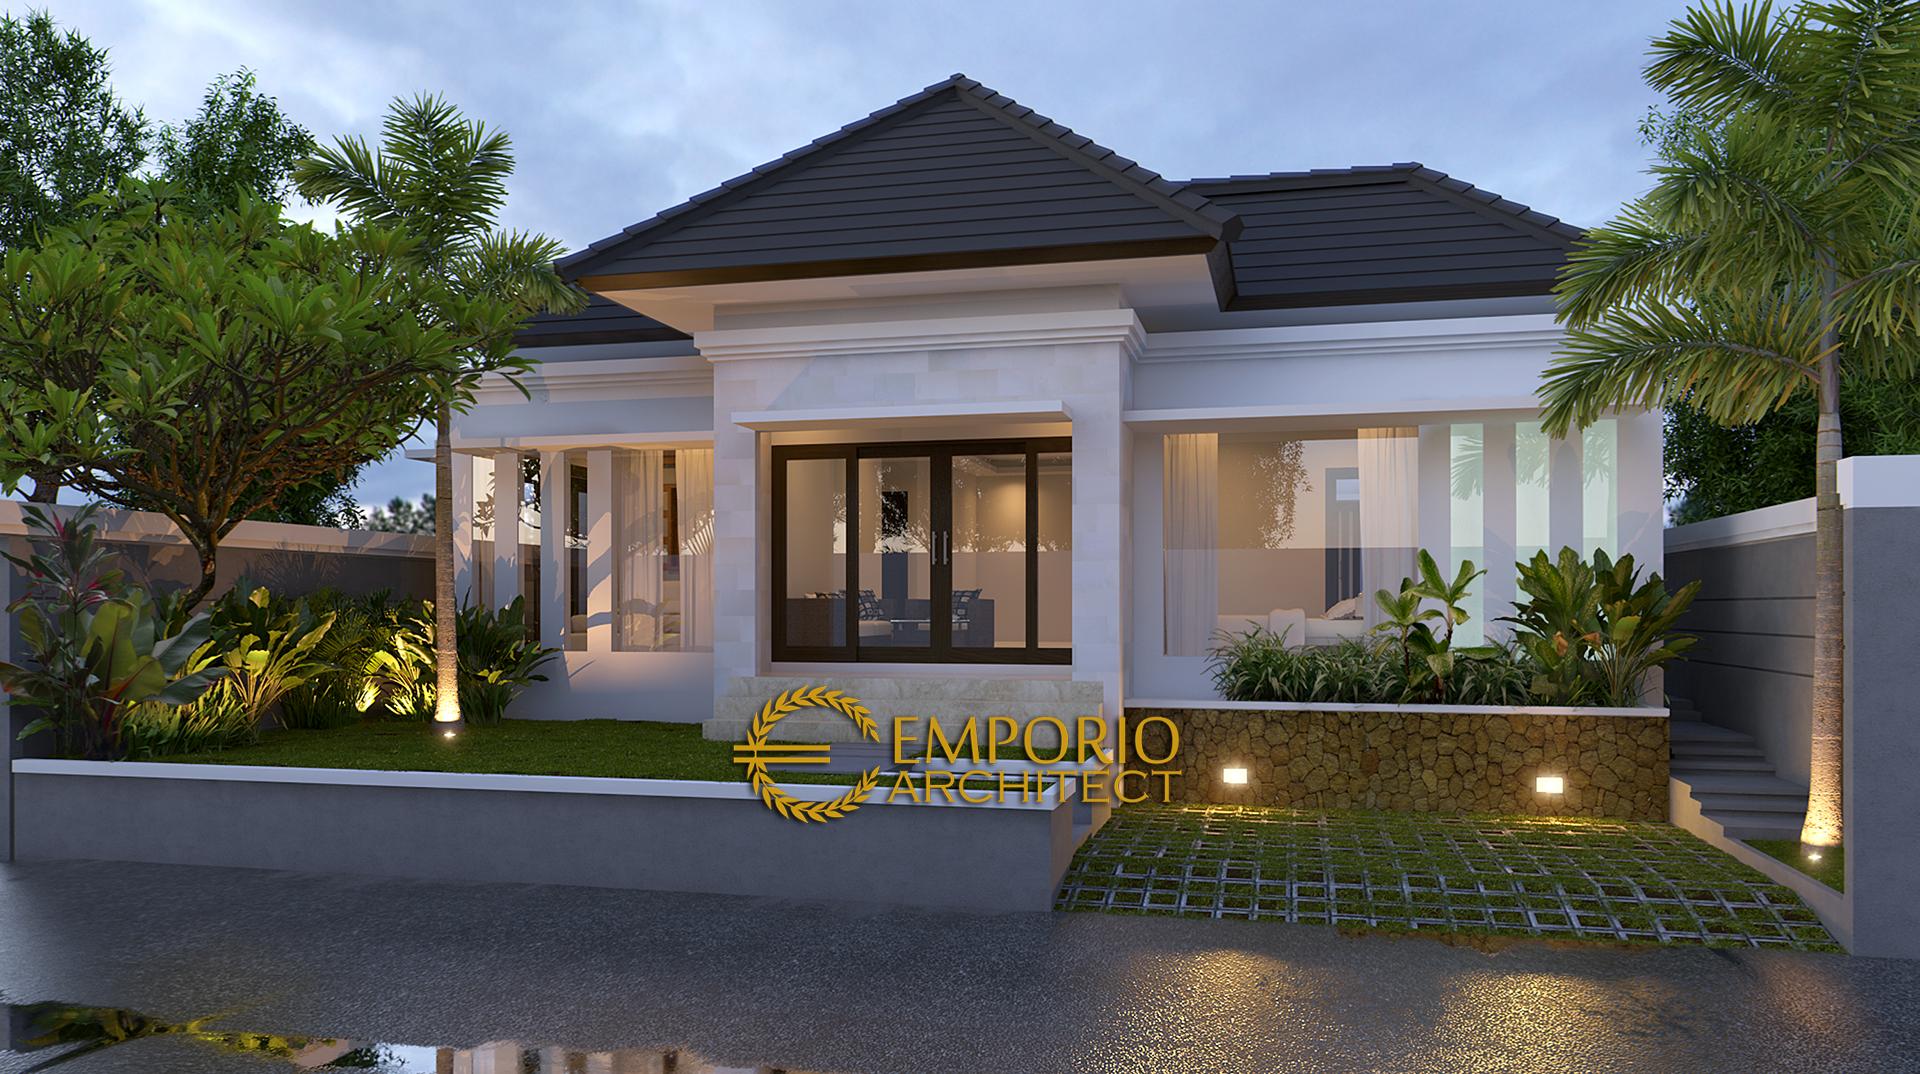 Desain Rumah Villa Bali 1 Lantai Bapak Syaikhul Islam Di Surabaya